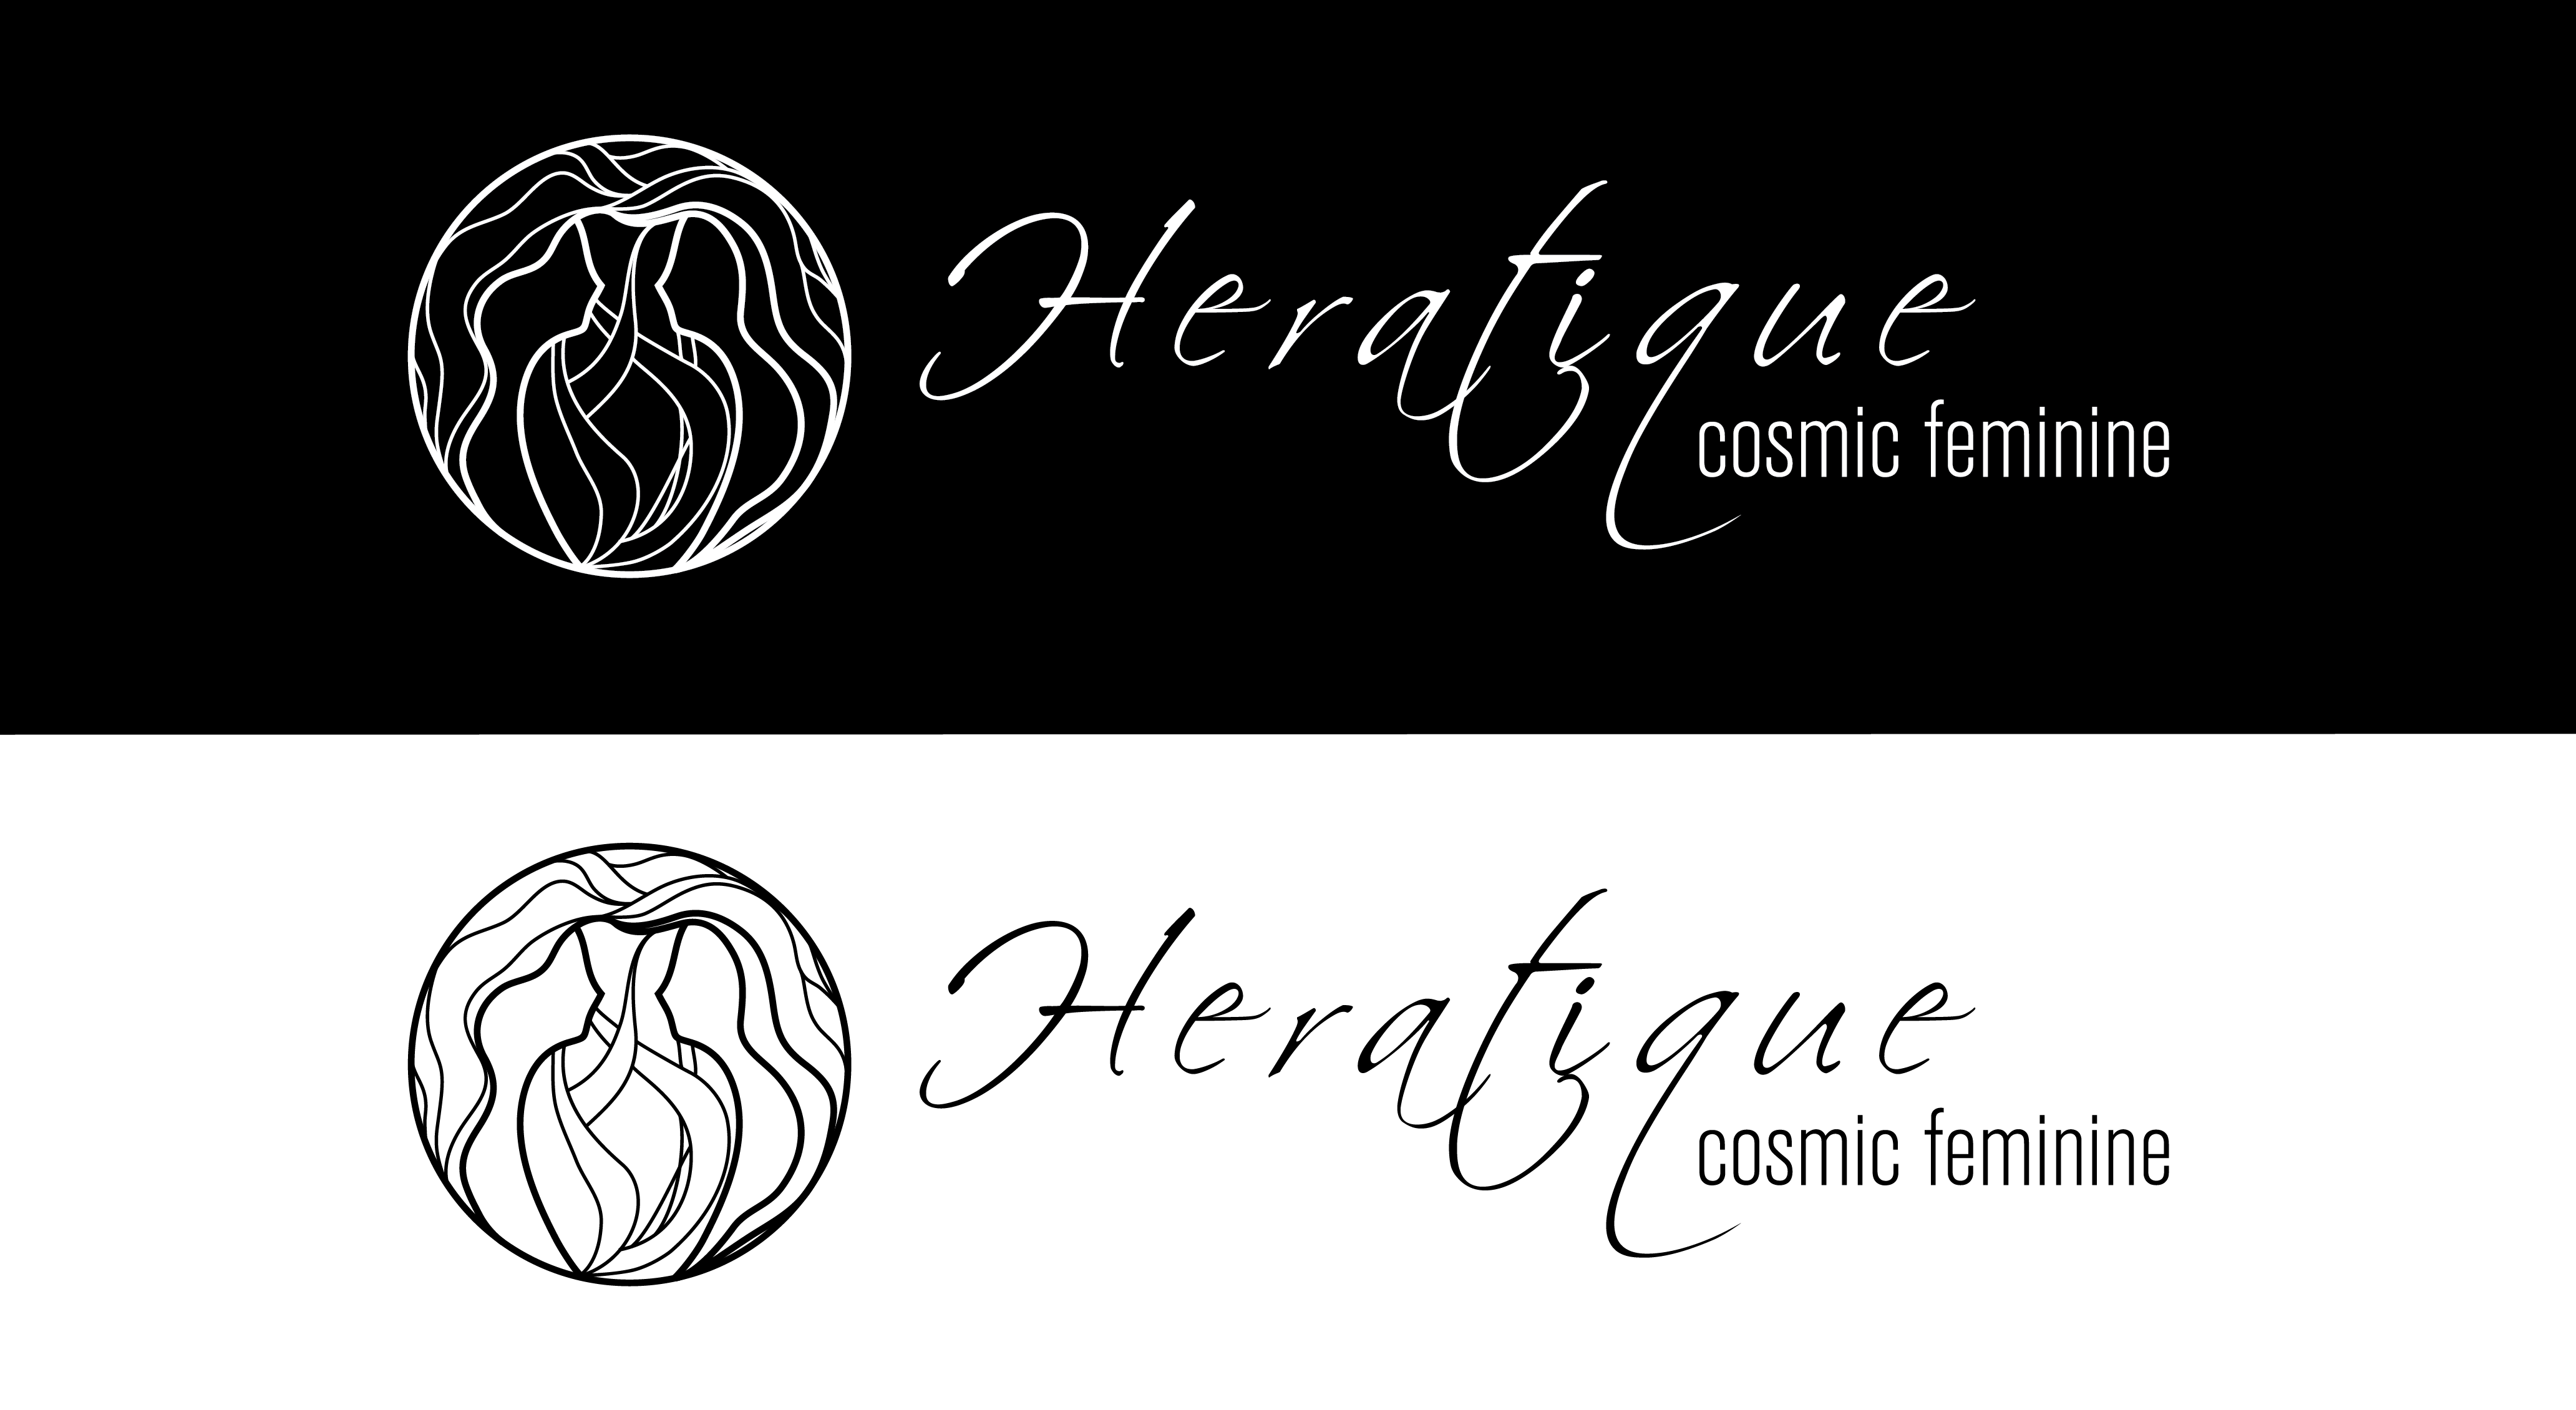 Heratique Cosmic Feminine logo and packaging design 